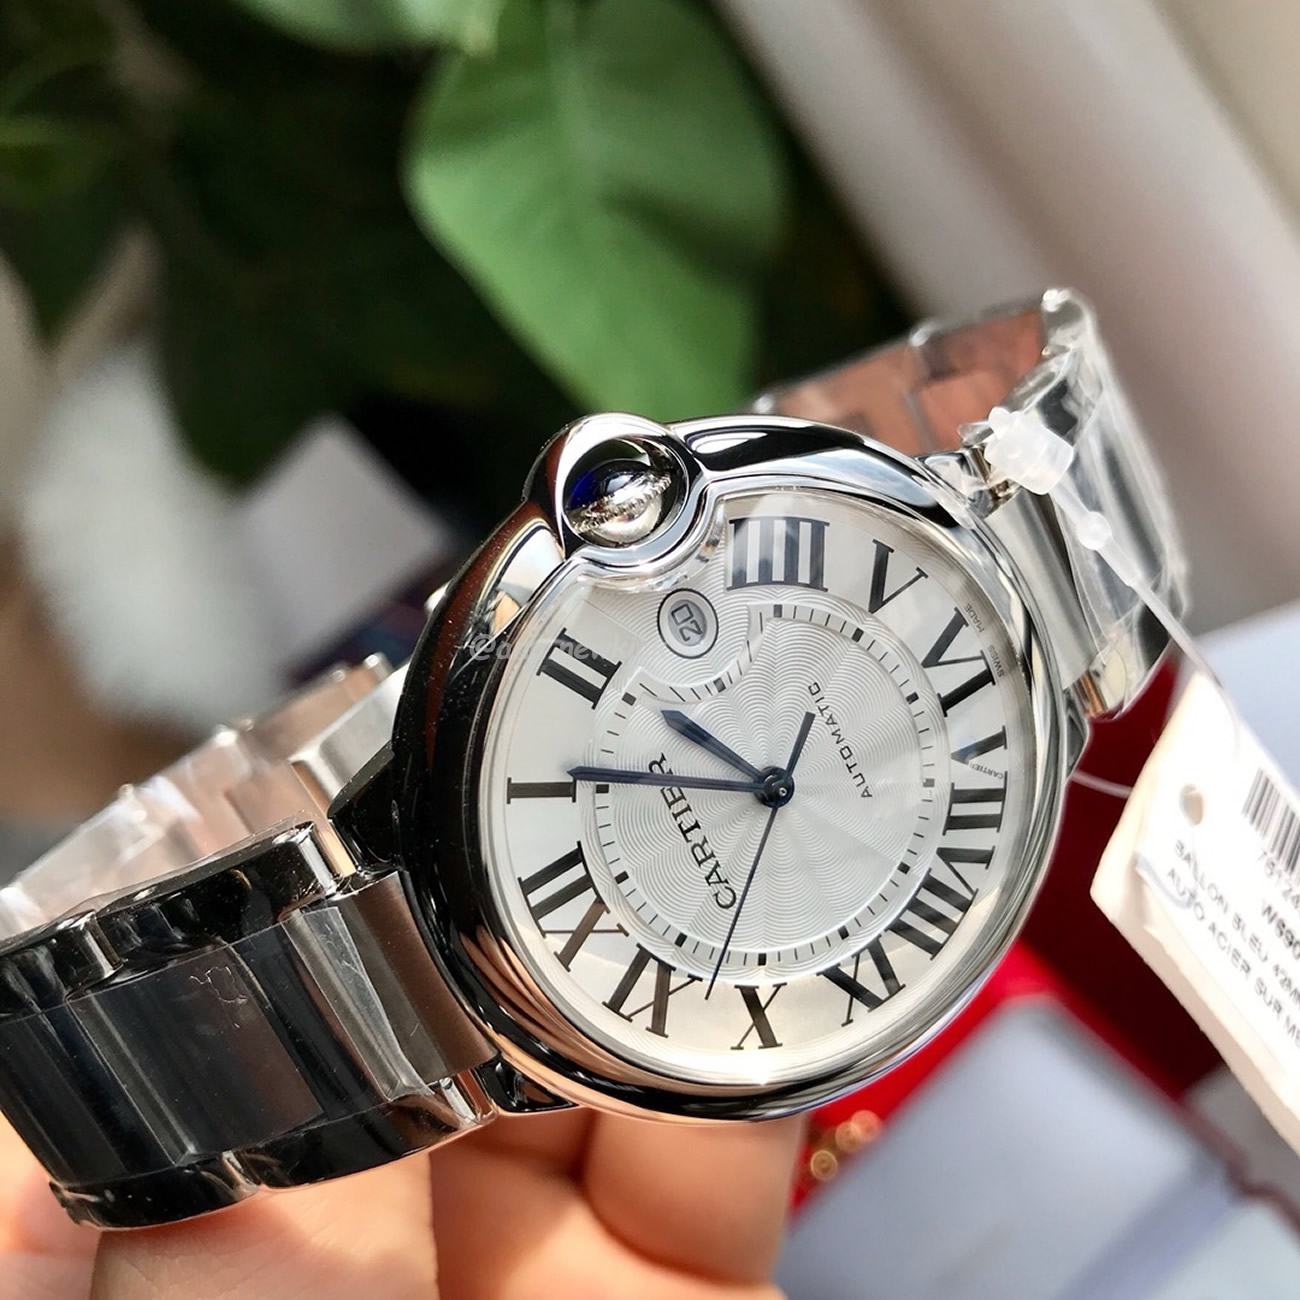 Cartier Ballon Bleu De Cartier Wrist Watch (7) - newkick.org